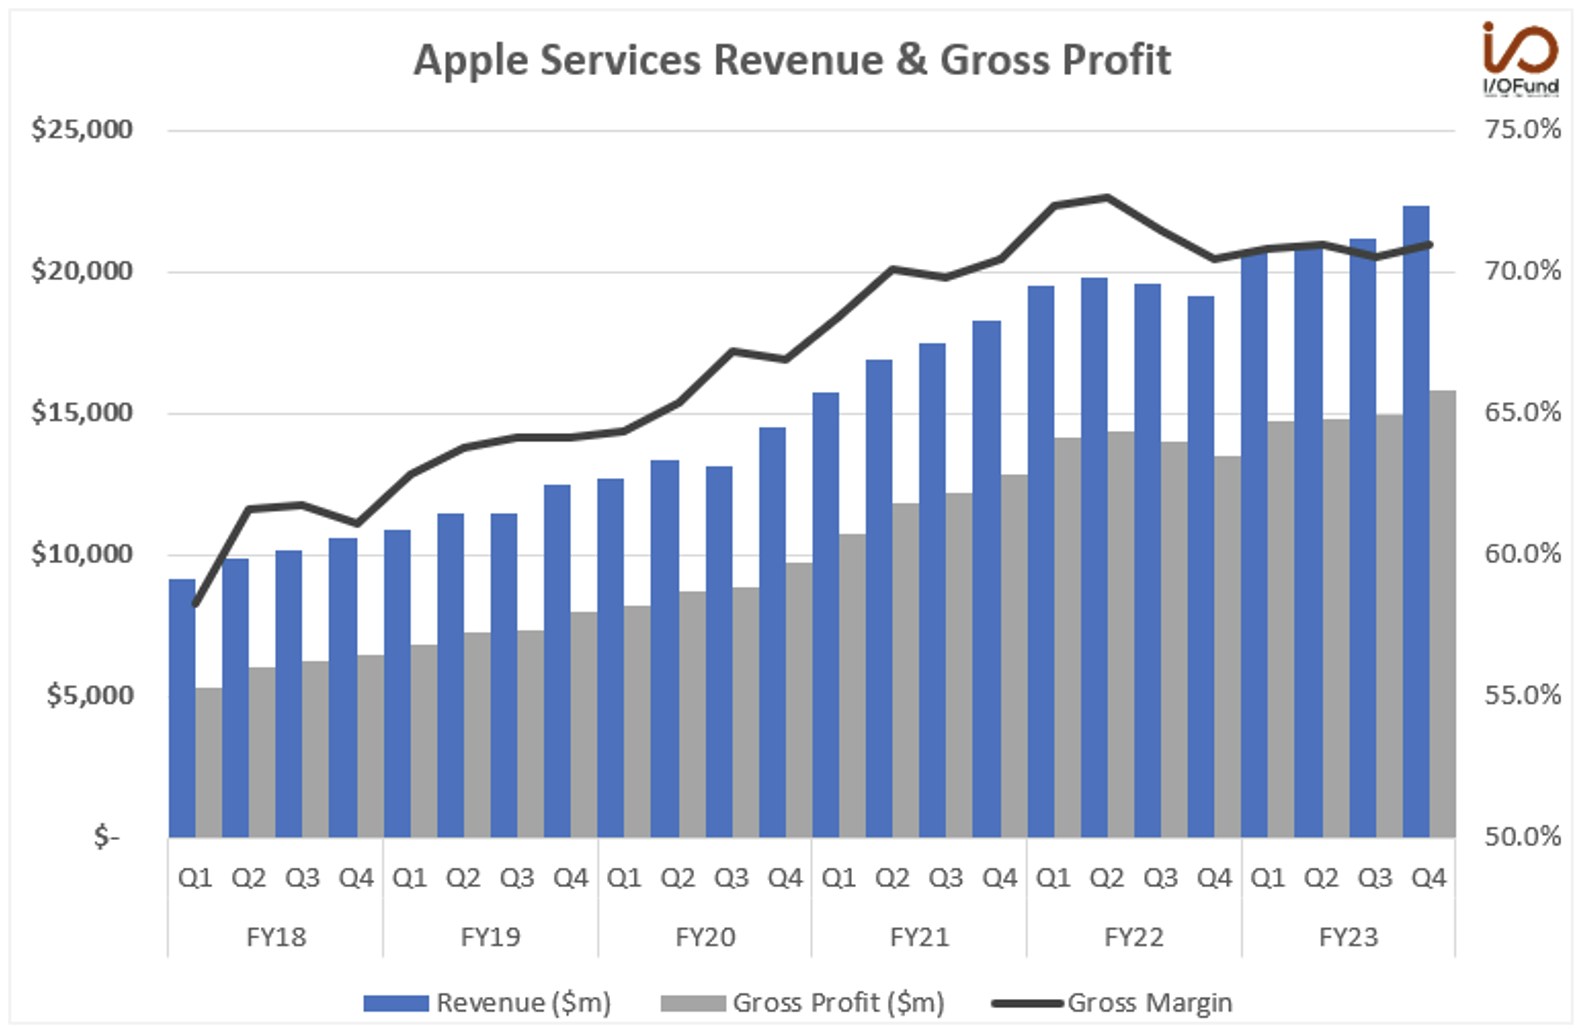 Apple Services Revenue & Gross Profit